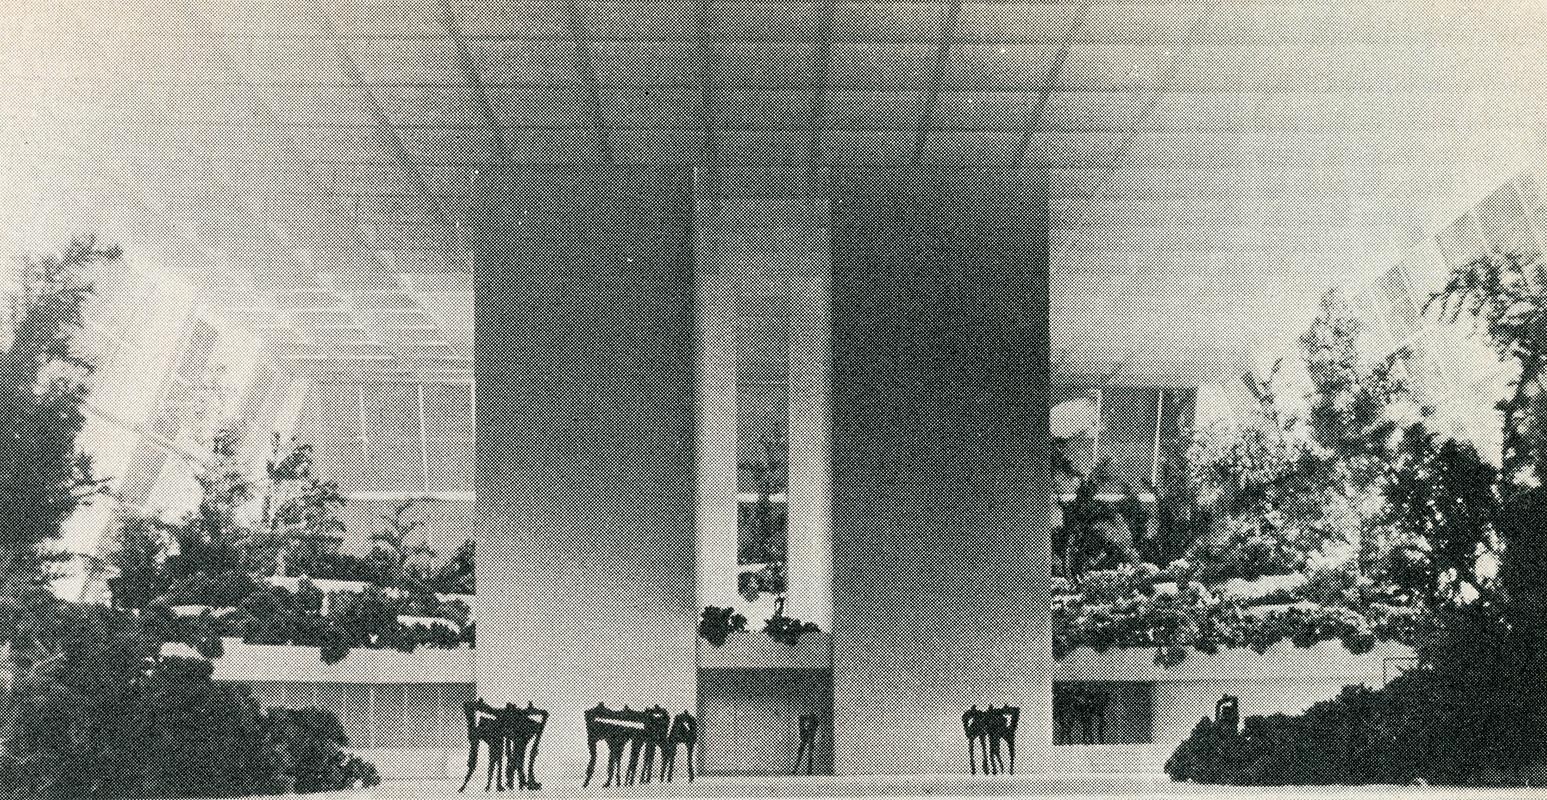 Takenaka. Architectural Record. Sep 1972, 43